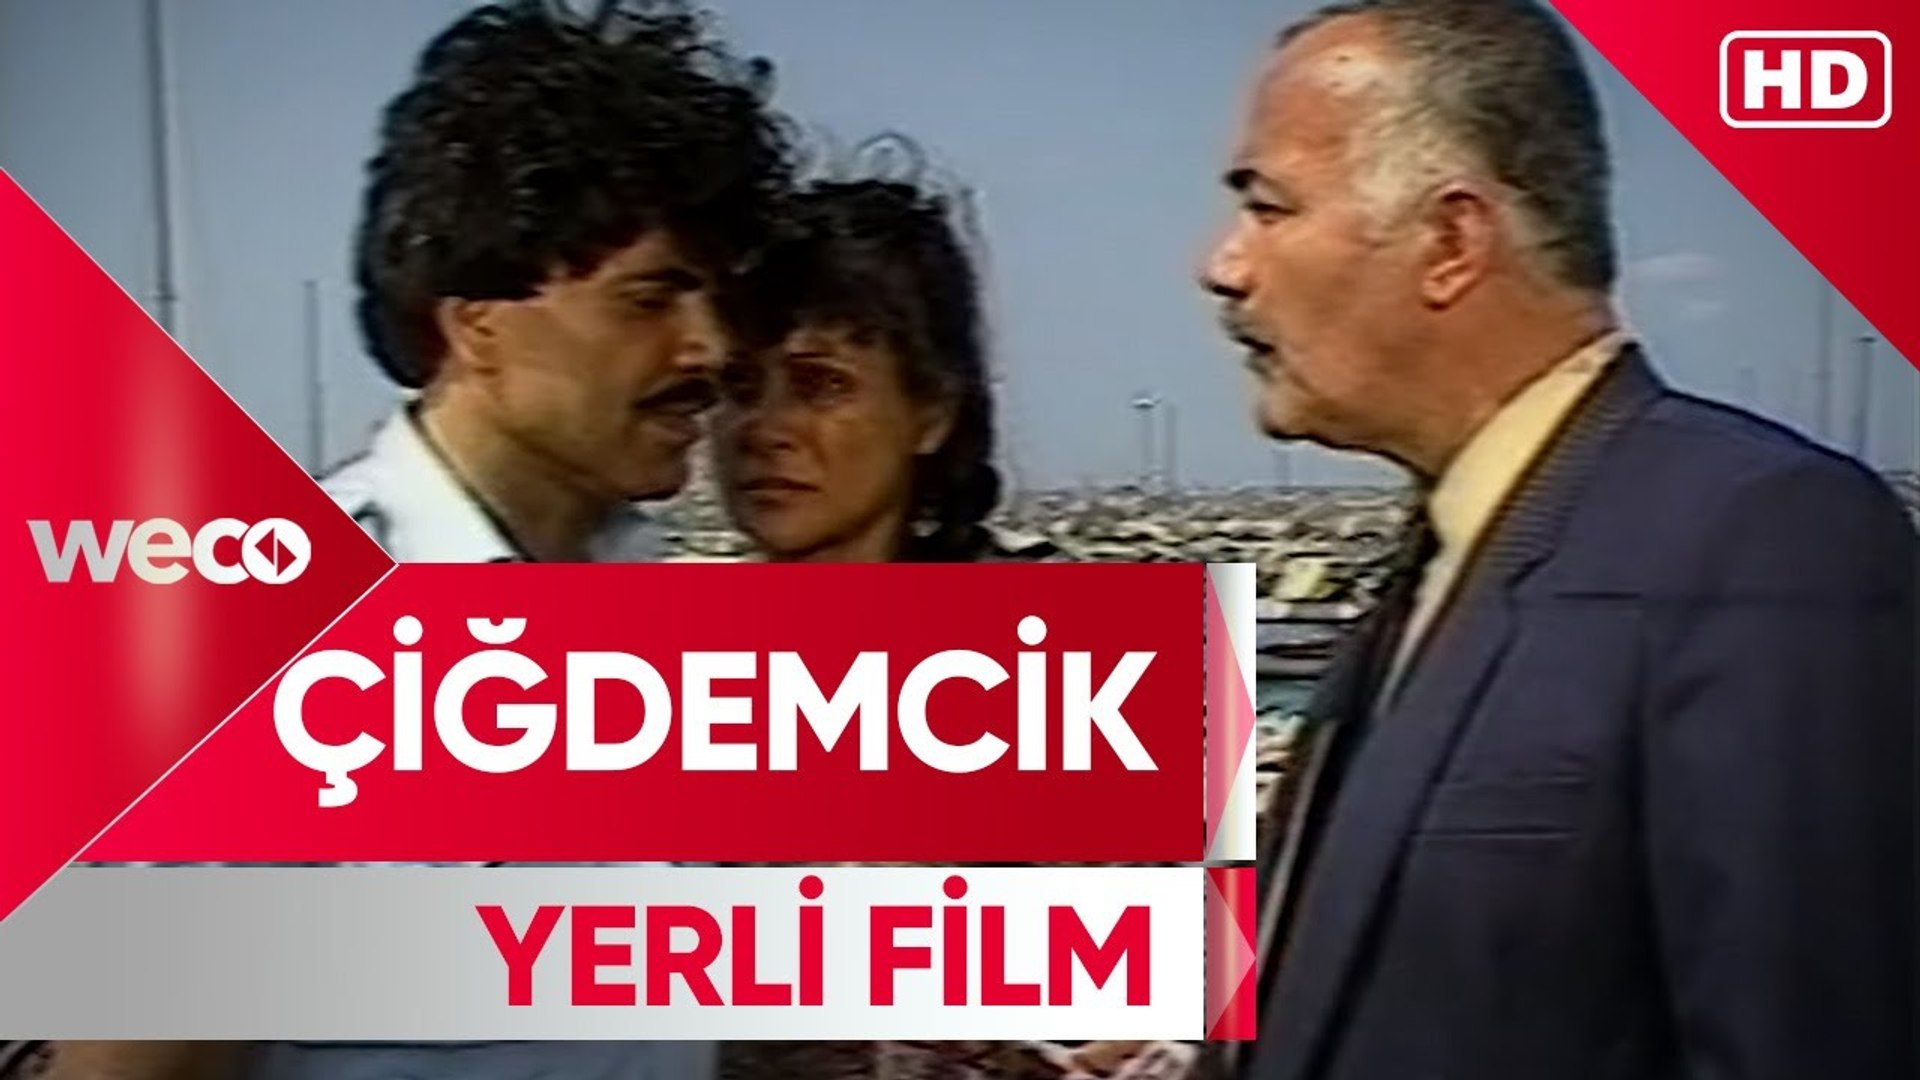 Çiğdemcik (1984) | Yerli Film | Tek Parça | Majestik Film | Weco Film -  Dailymotion Video